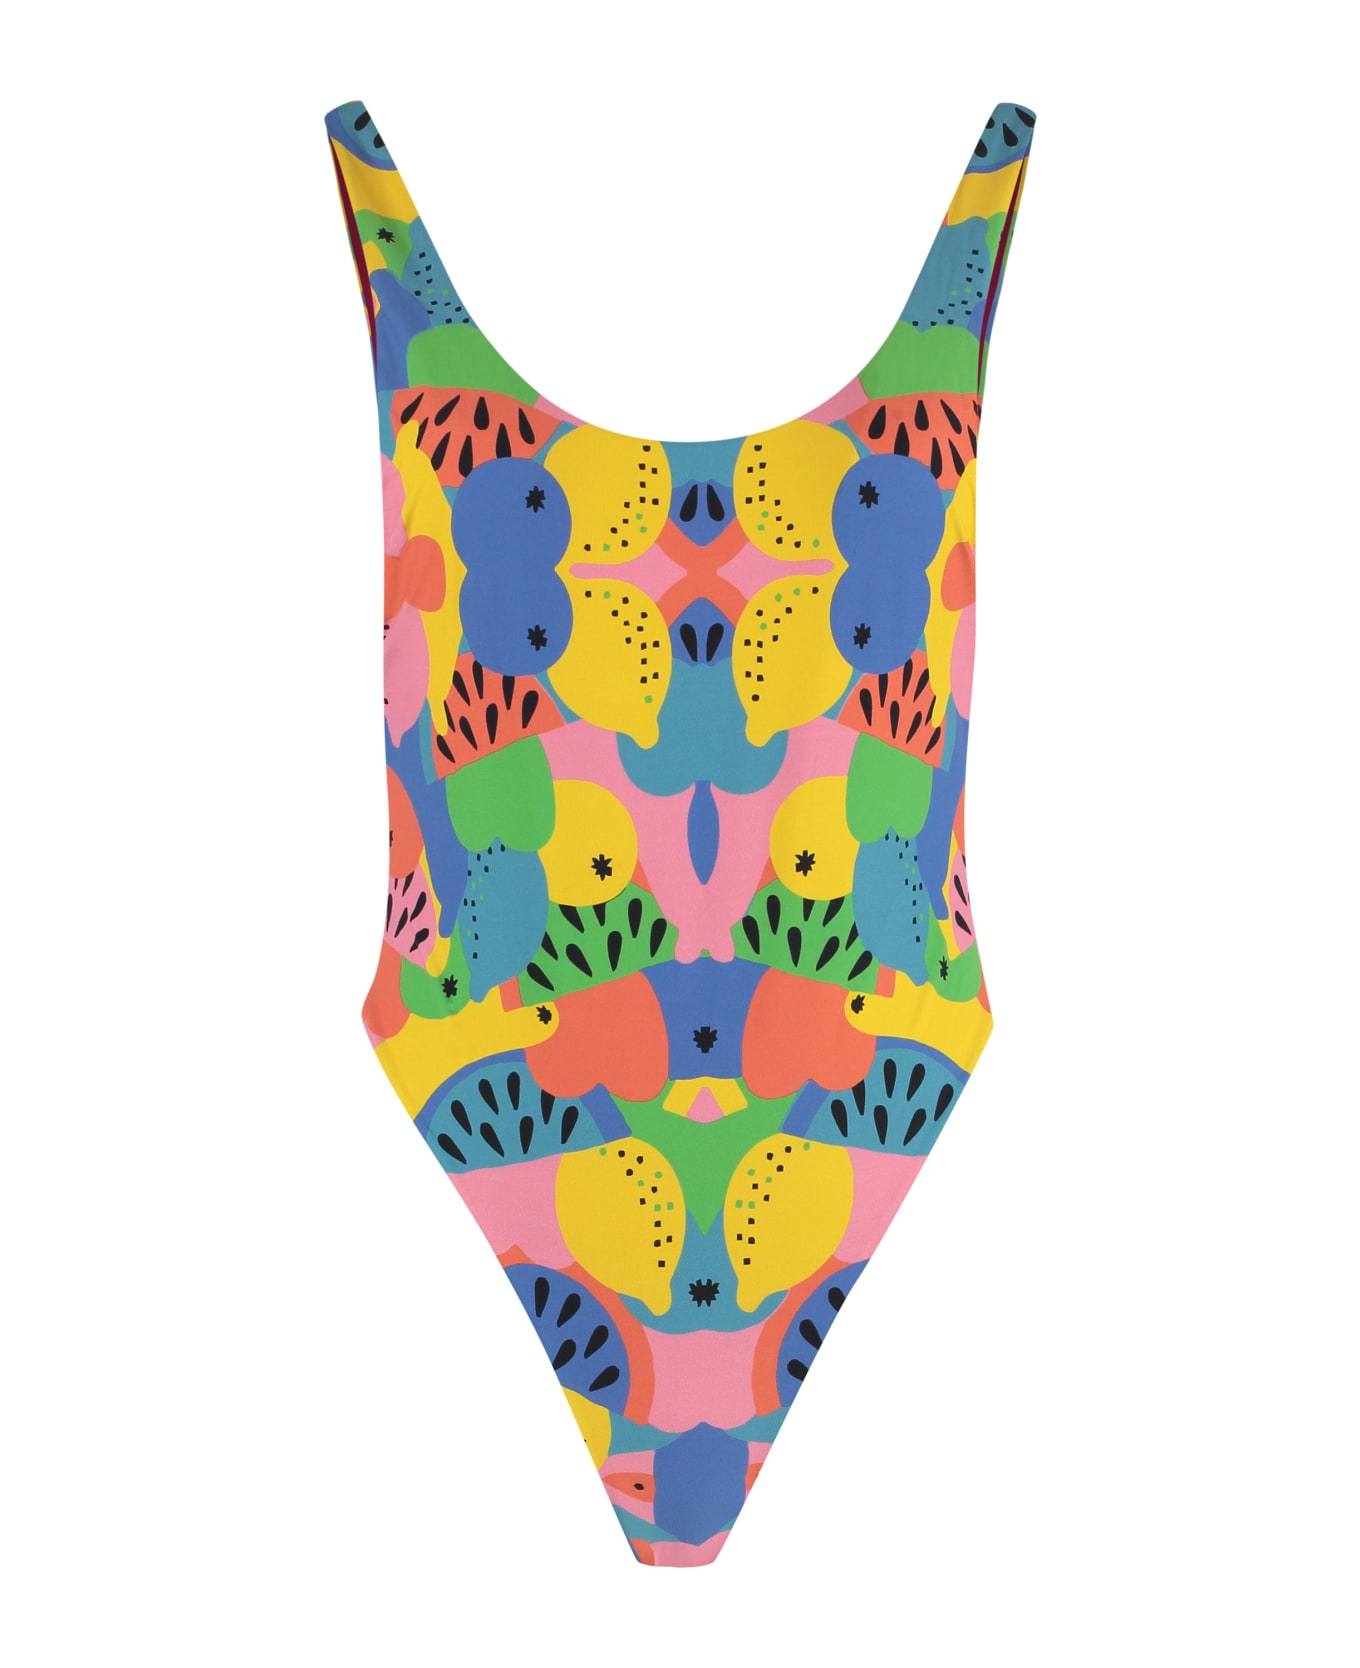 Reina Olga Funky One-piece Swimsuit - Multicolor 水着